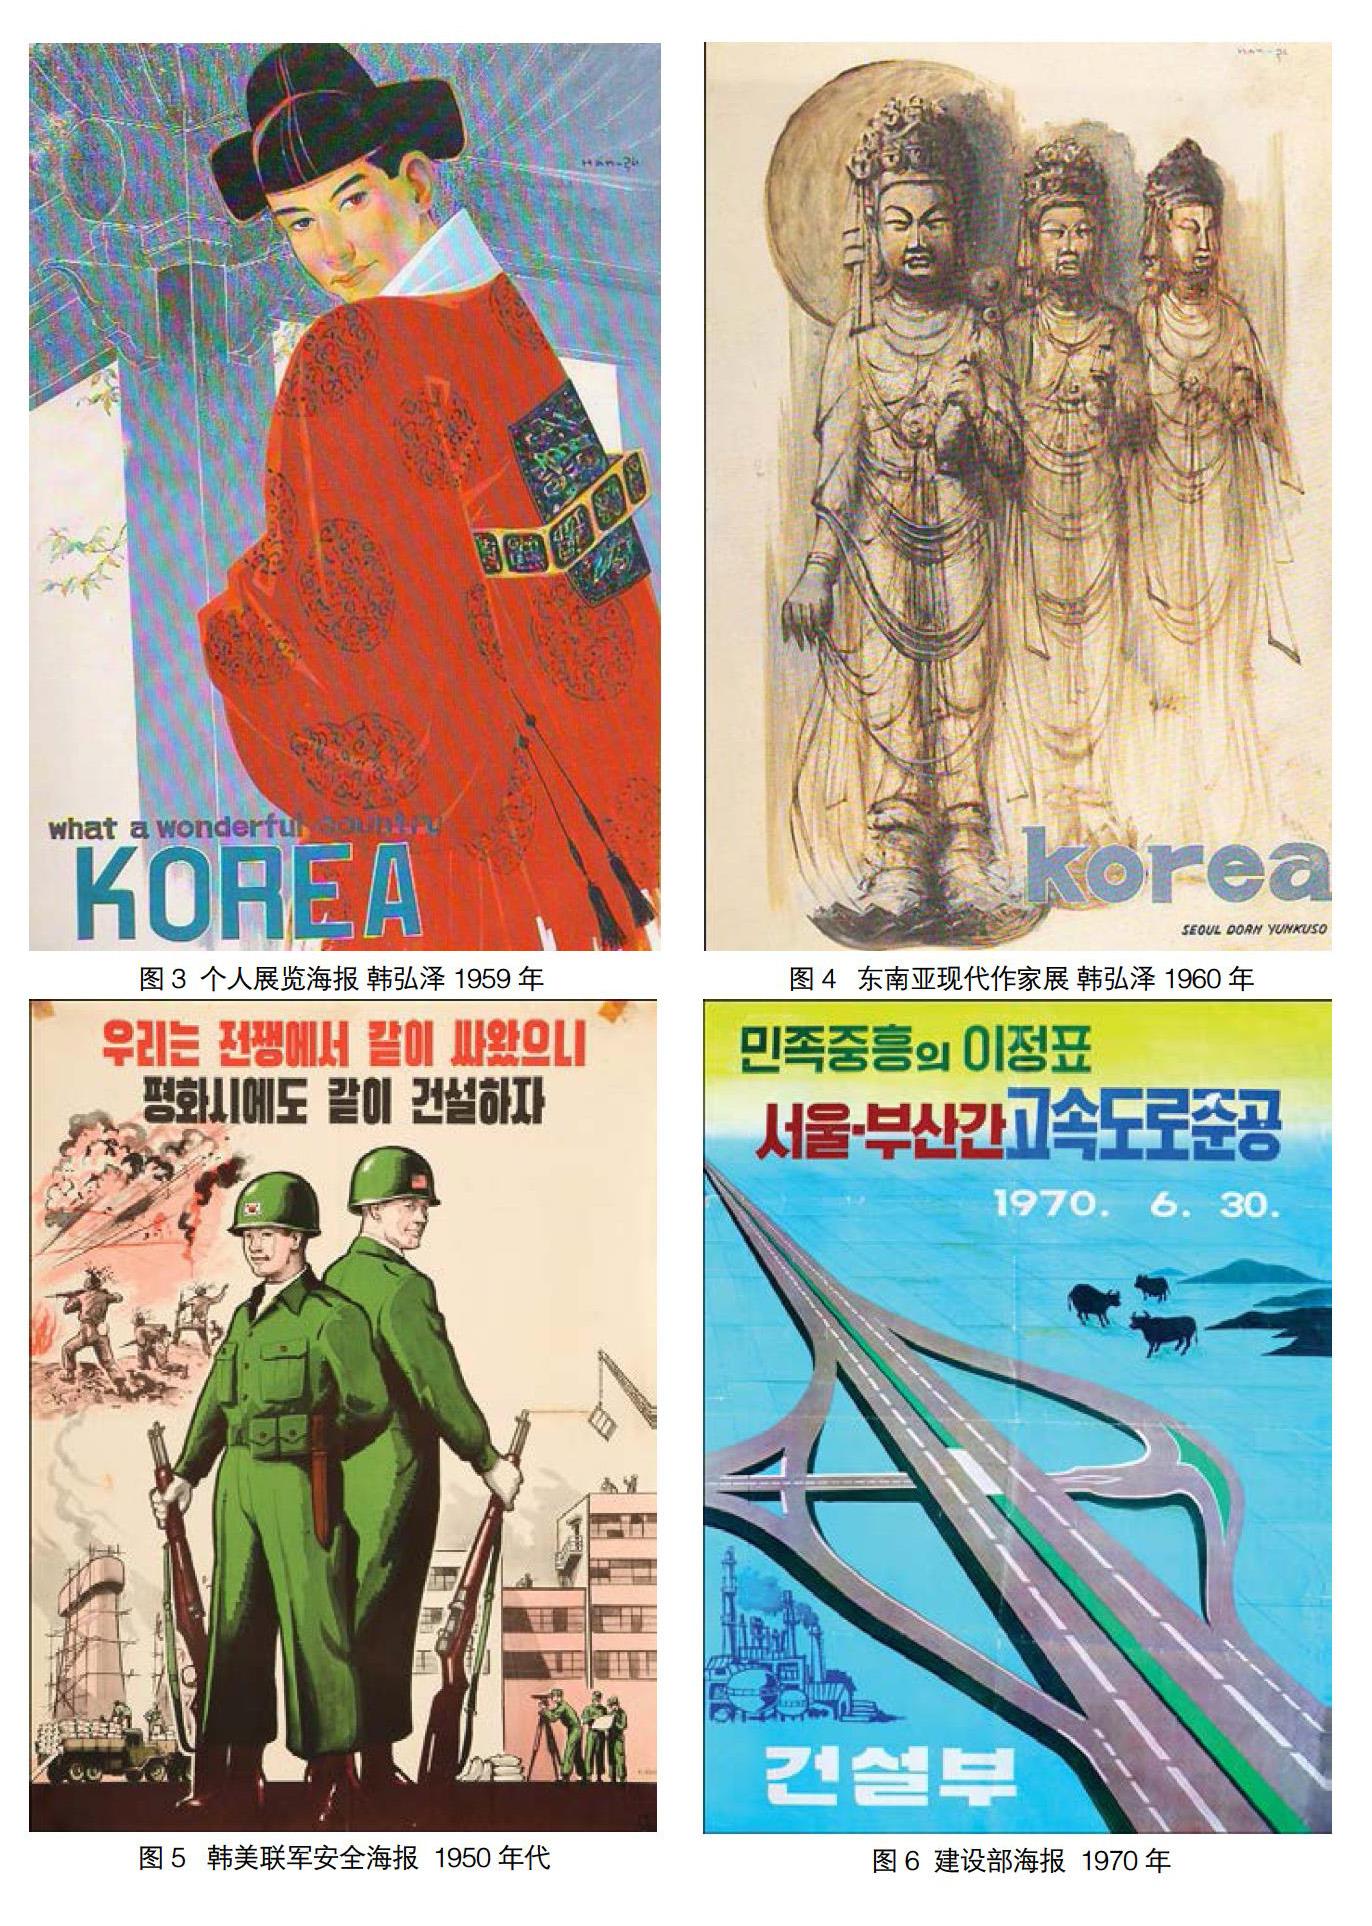 韩国现代海报的发展及民族文化表现 参考网